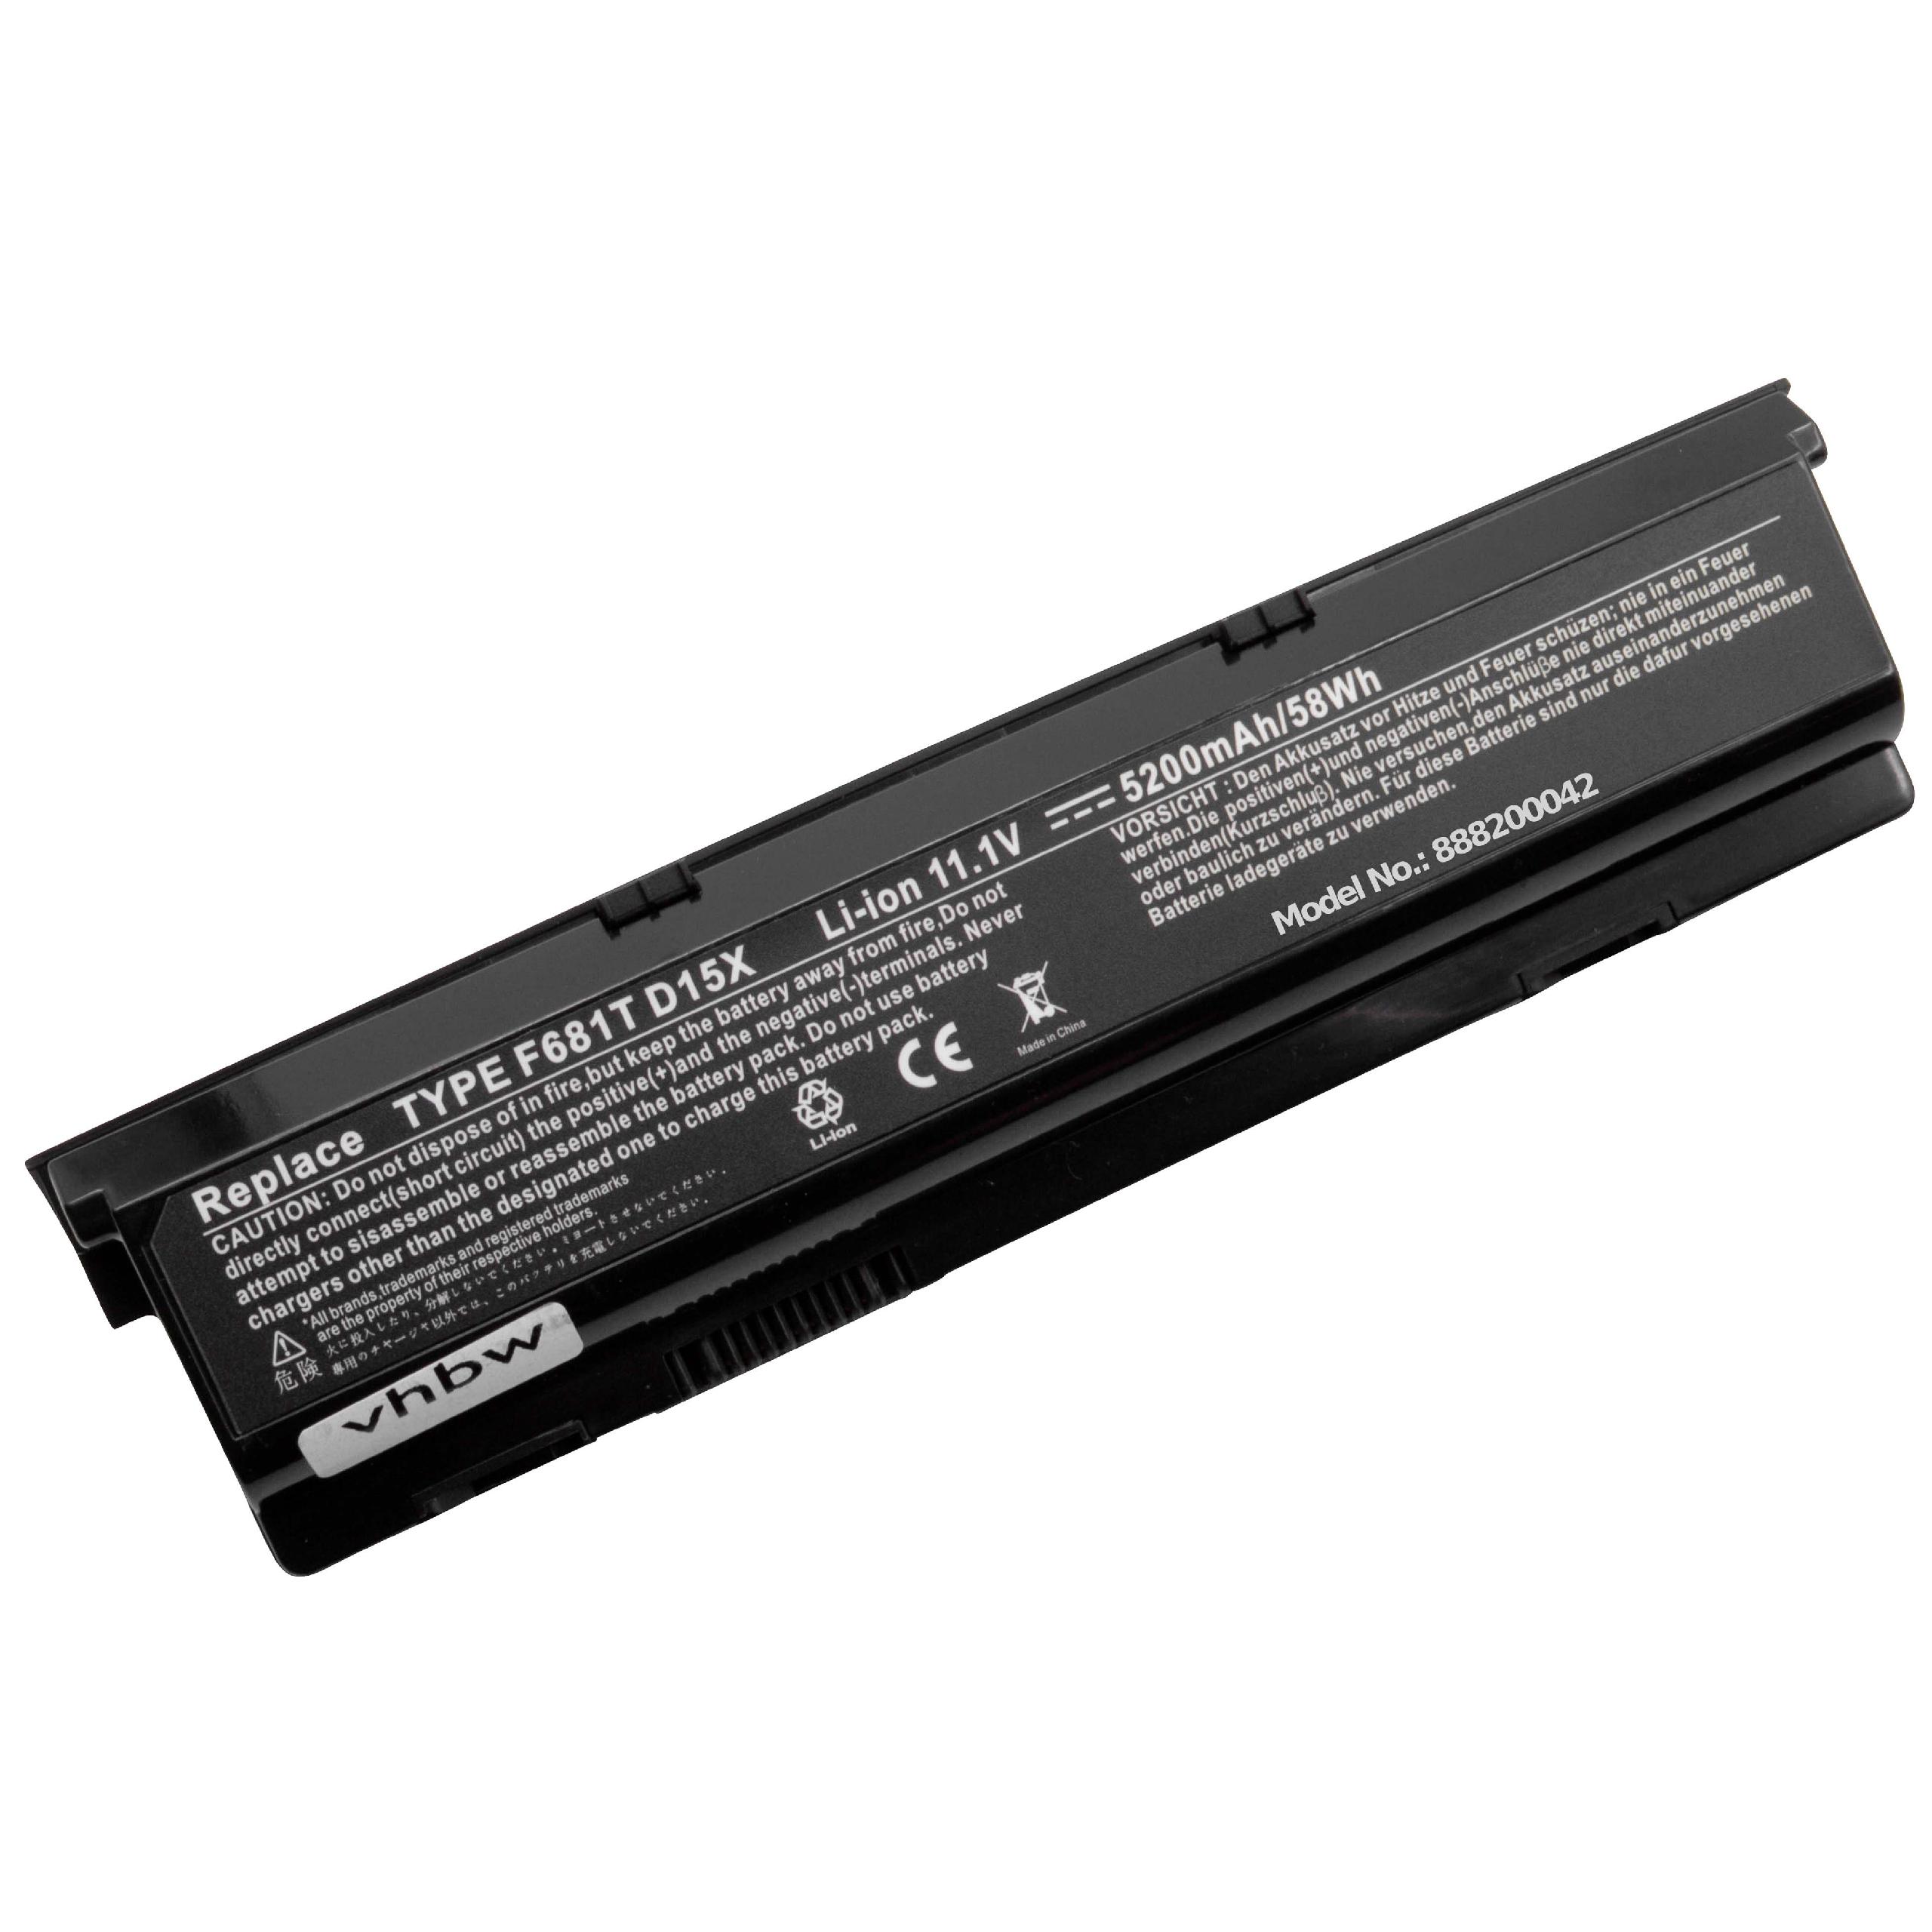 Batteria sostituisce Dell 0HC26Y, 0F681T, 0D951T, 0W3VX3 per notebook Dell - 5200mAh 11,1V Li-Ion nero